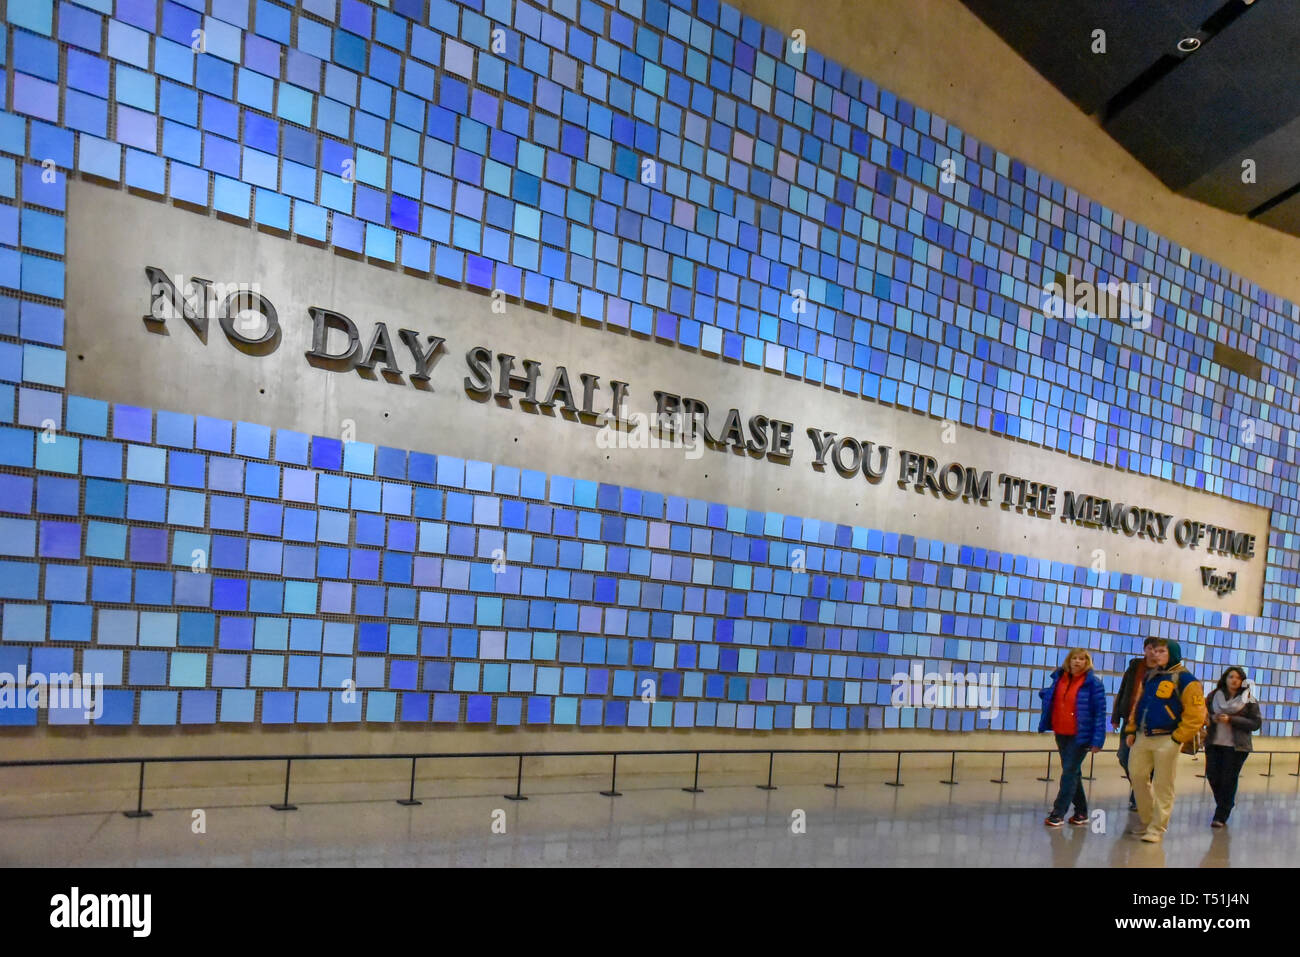 À l'intérieur du National le 11 septembre (9/11) et Memorial Museum. Détail d'entrée. Mur bleu avec texte lecture : pas de jour s'effacer de la mémoire Vous o Banque D'Images